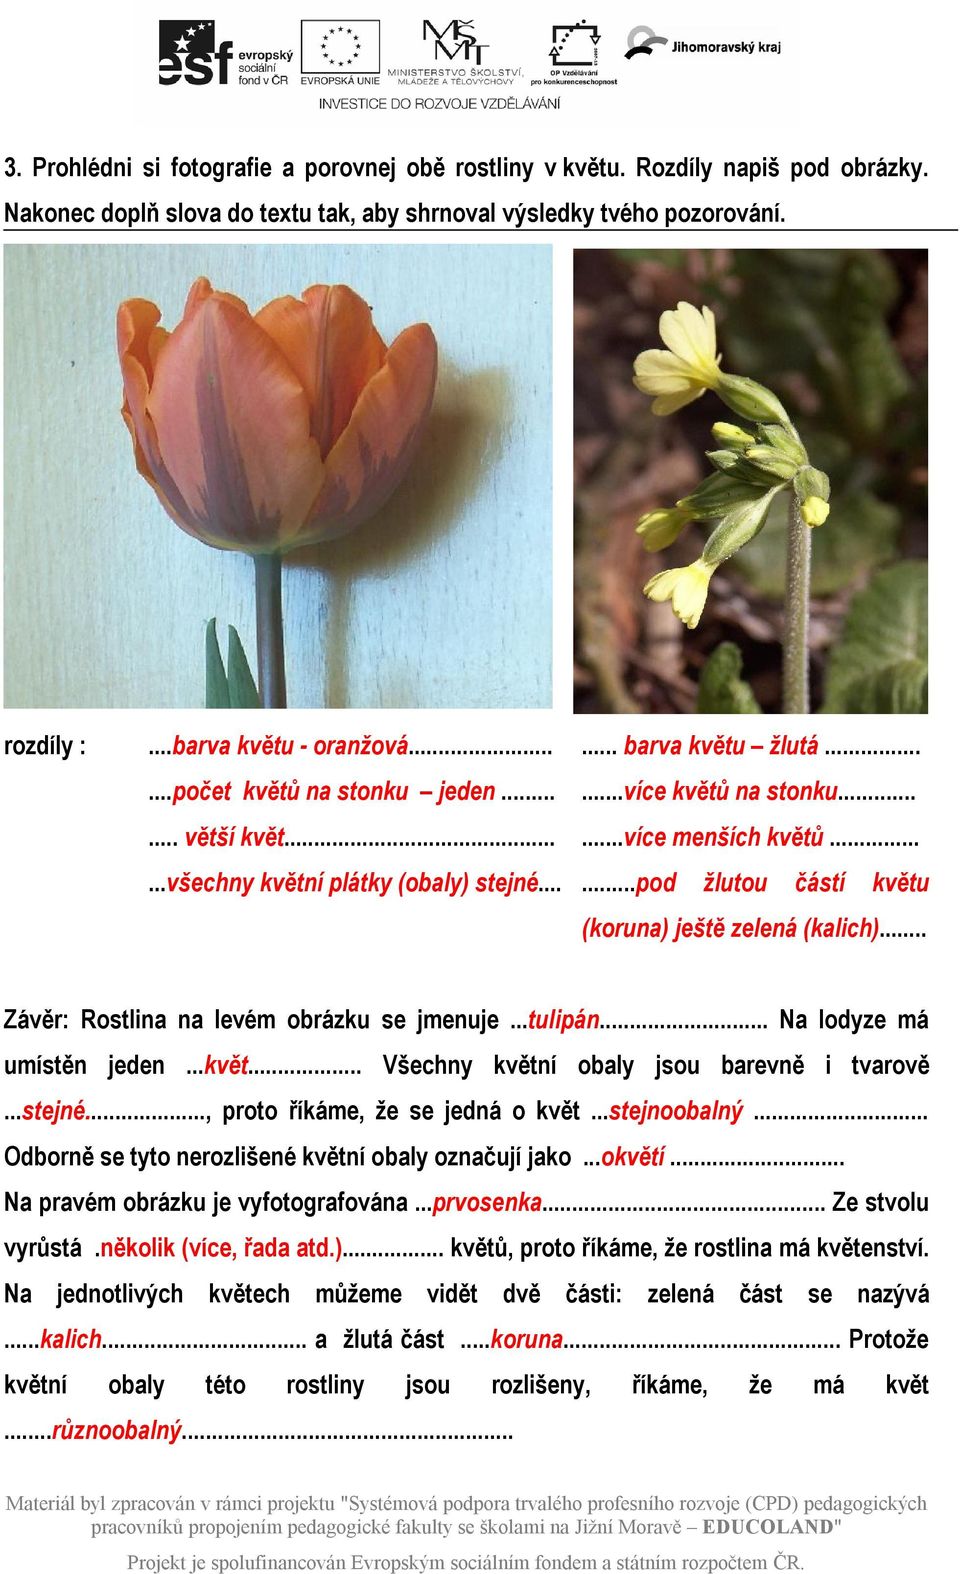 .....pod žlutou částí květu (koruna) ještě zelená (kalich)... Závěr: Rostlina na levém obrázku se jmenuje...tulipán... Na lodyze má umístěn jeden...květ... Všechny květní obaly jsou barevně i tvarově.